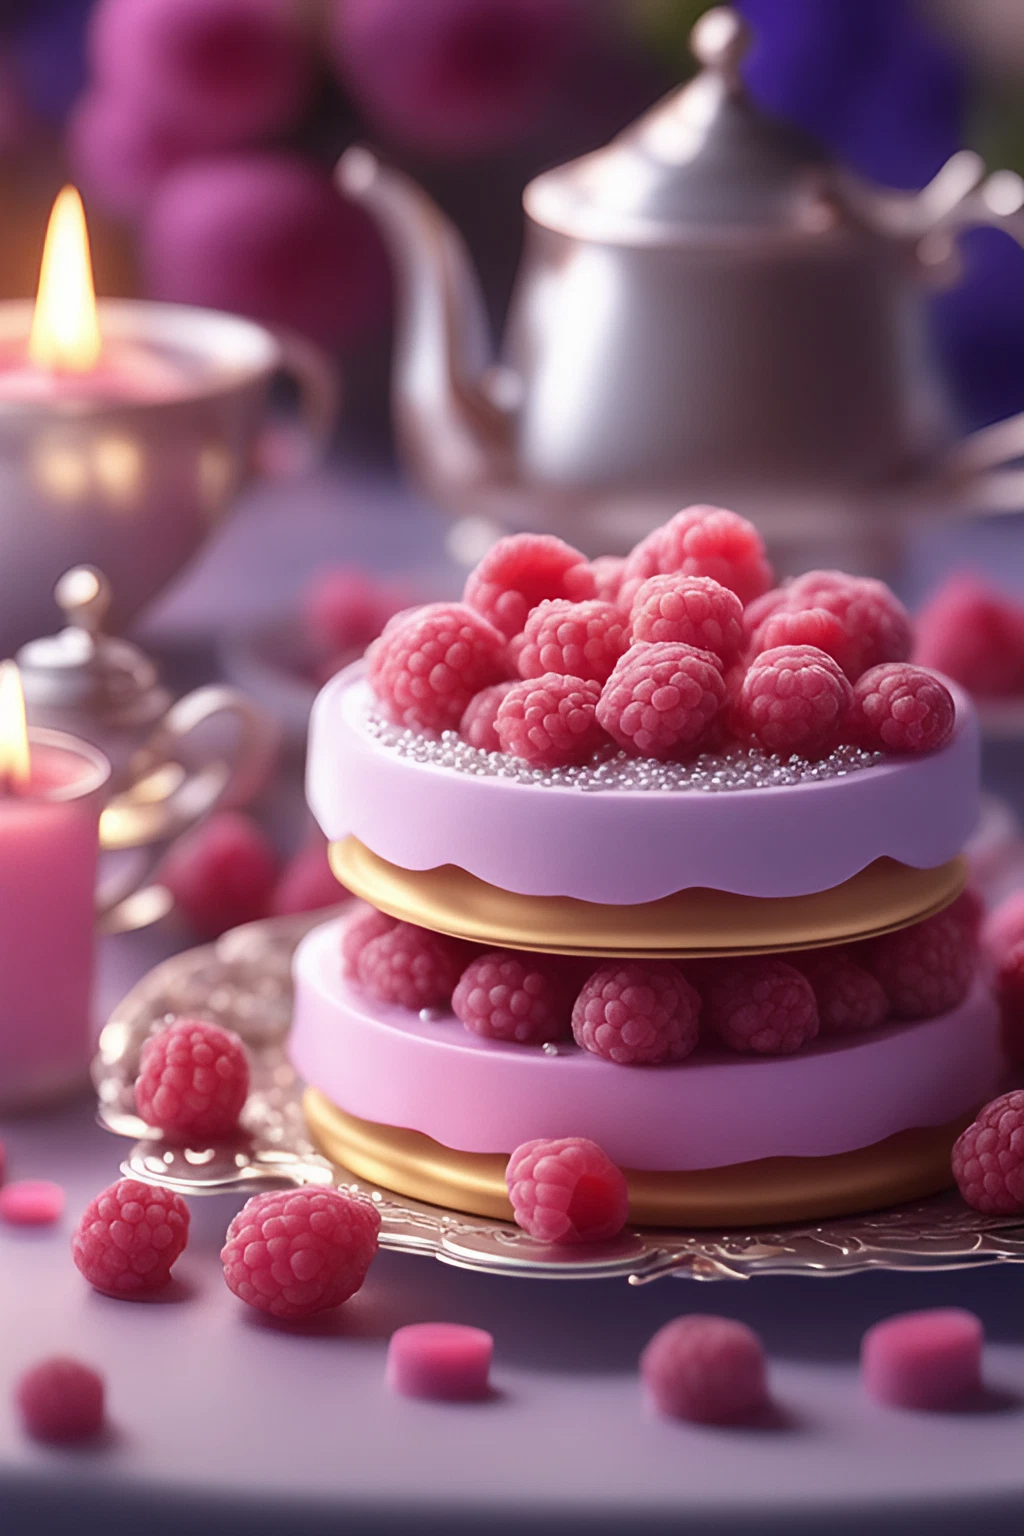 おいしそうなピンクのストロベリーケーキとかわいい料理のフリーイラスト素材